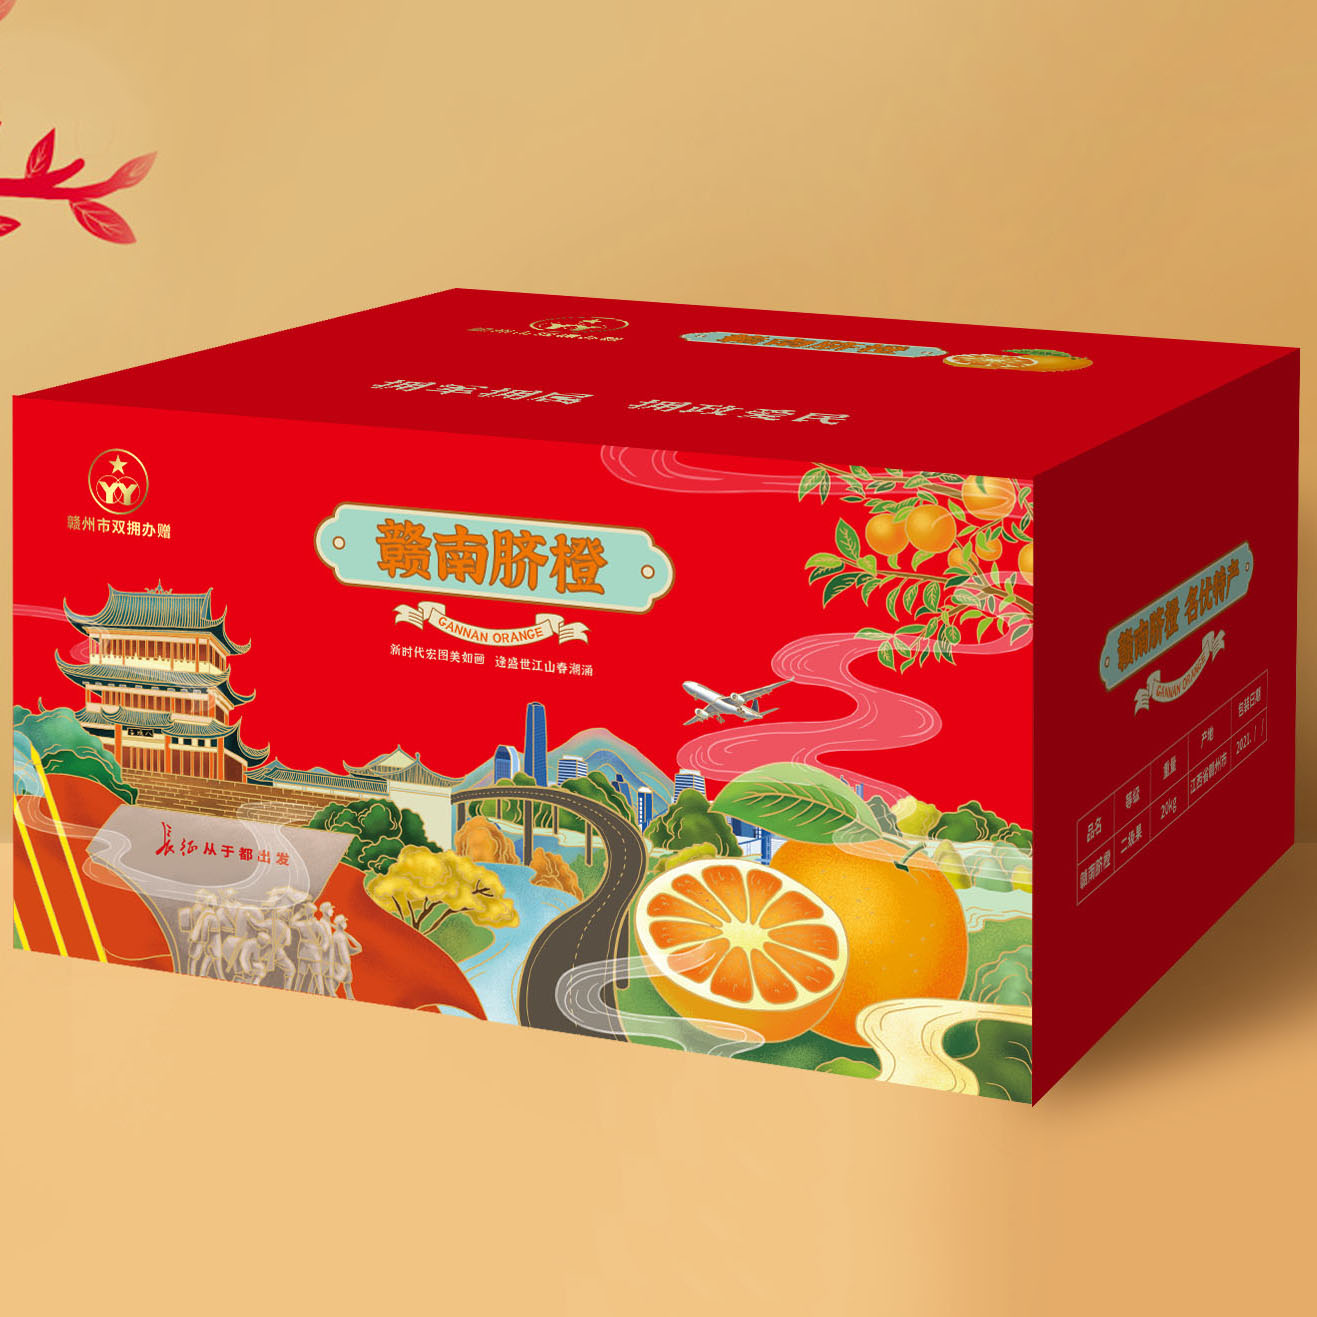 贛州豐龍水果包裝箱設計